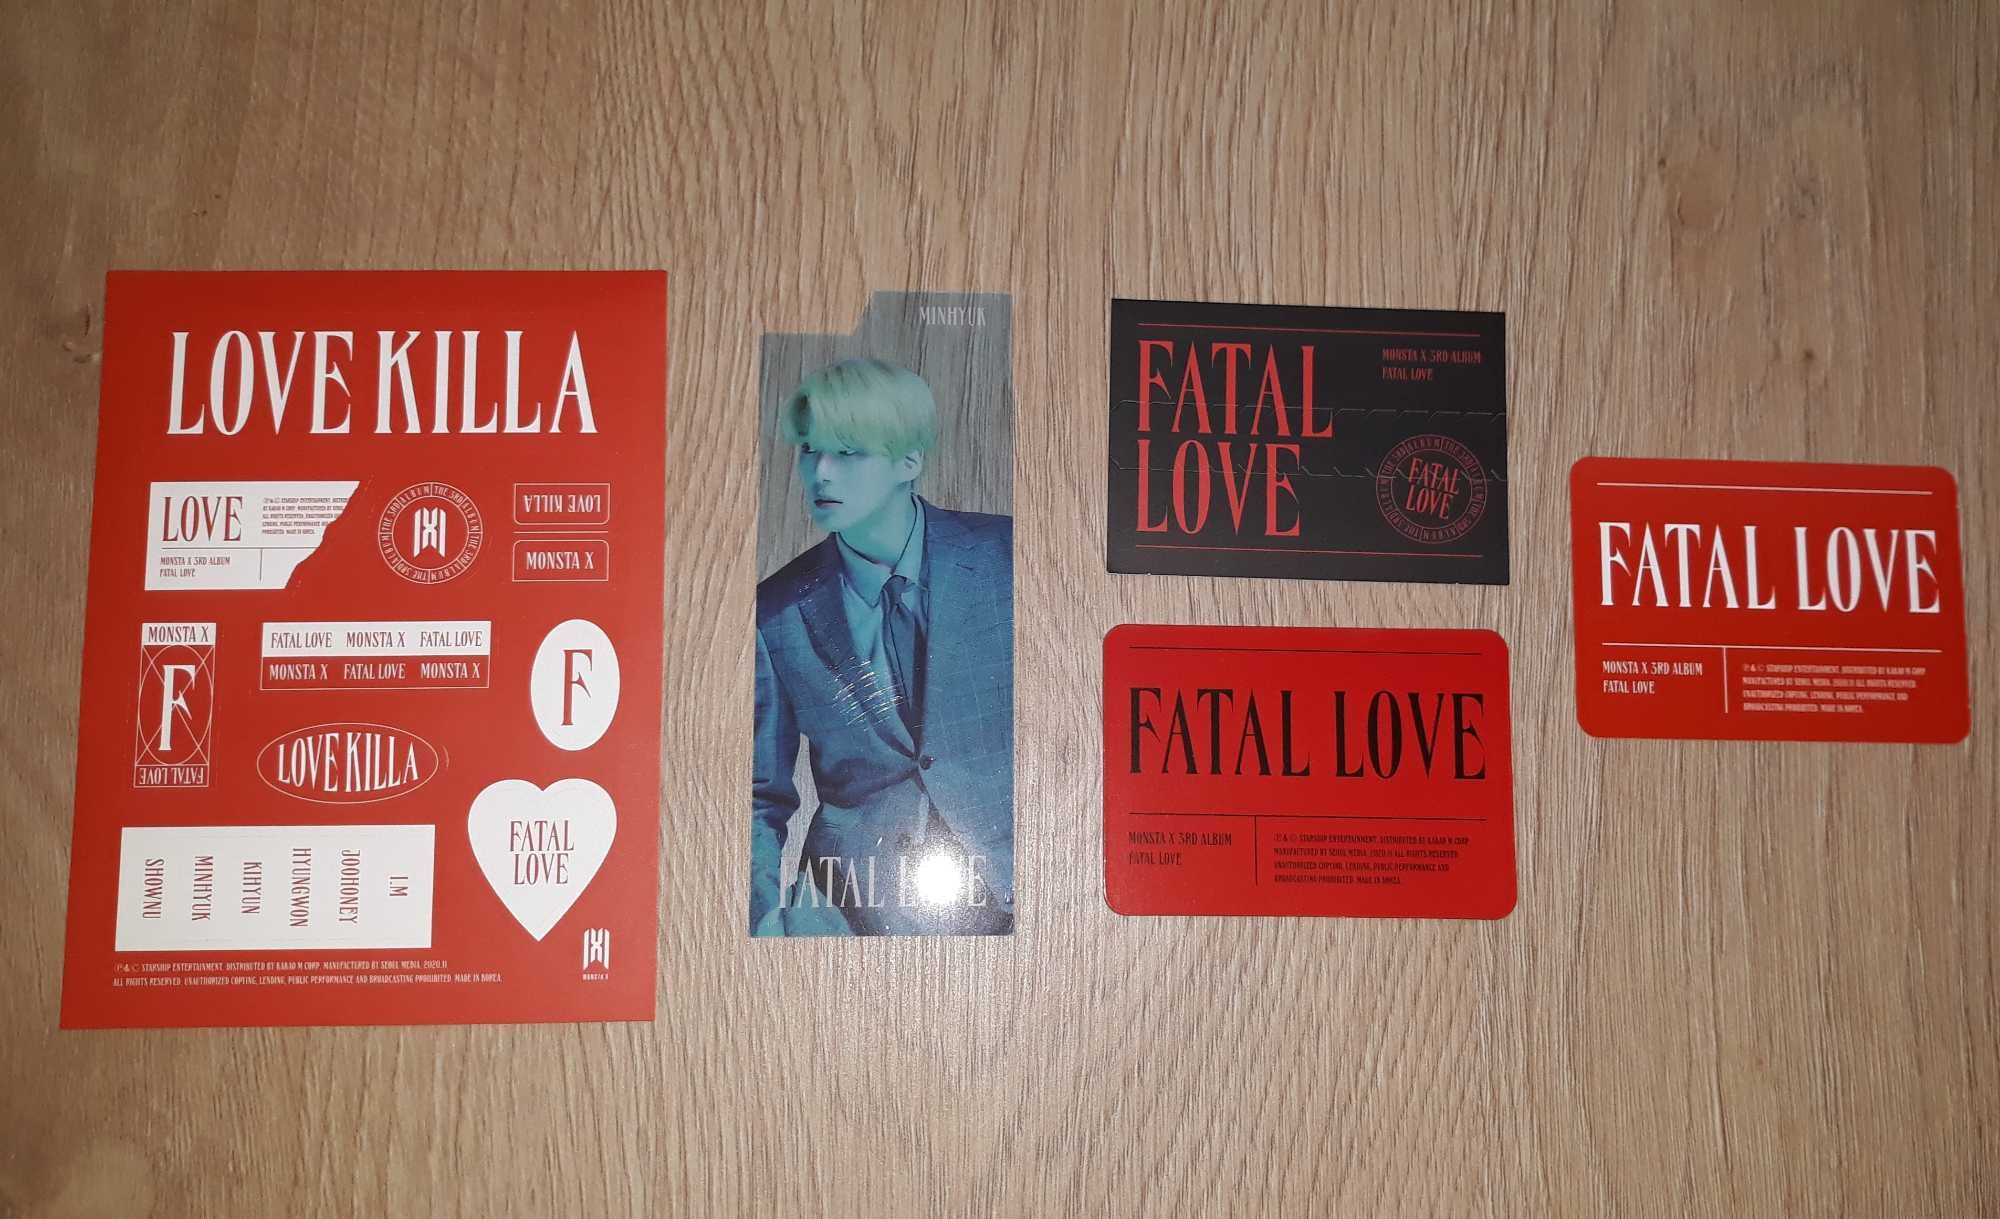 Álbum Kpop Monsta X - Fatal Love